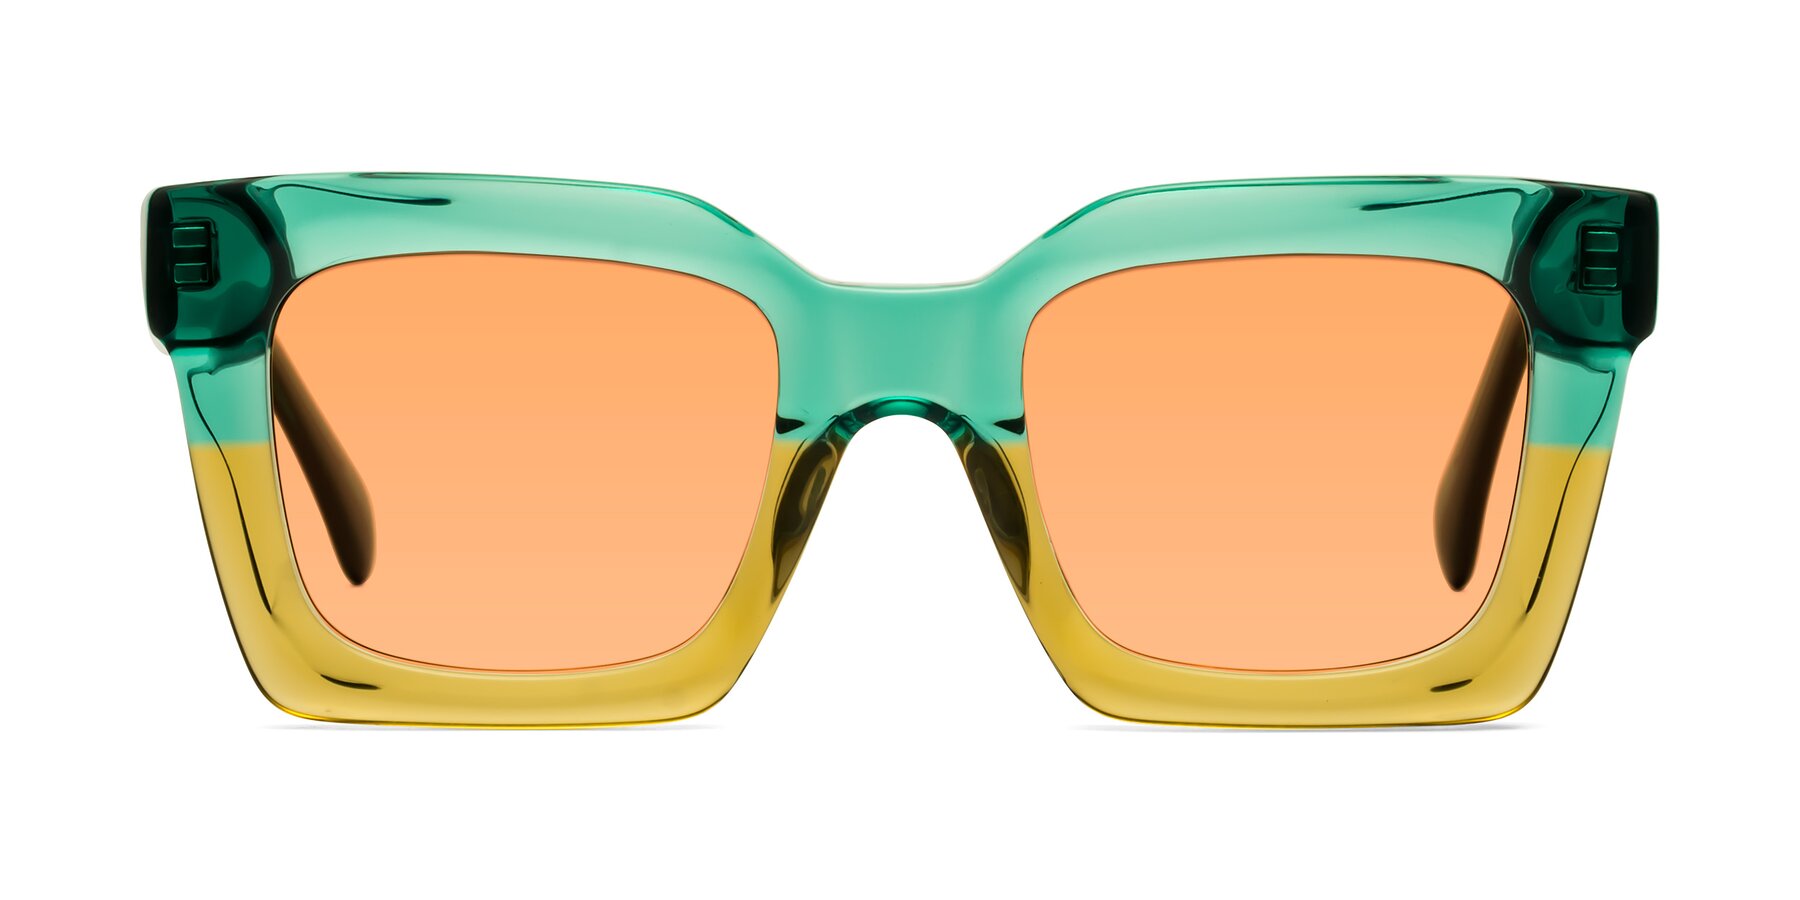 Piper - Green / Champagne Sunglasses